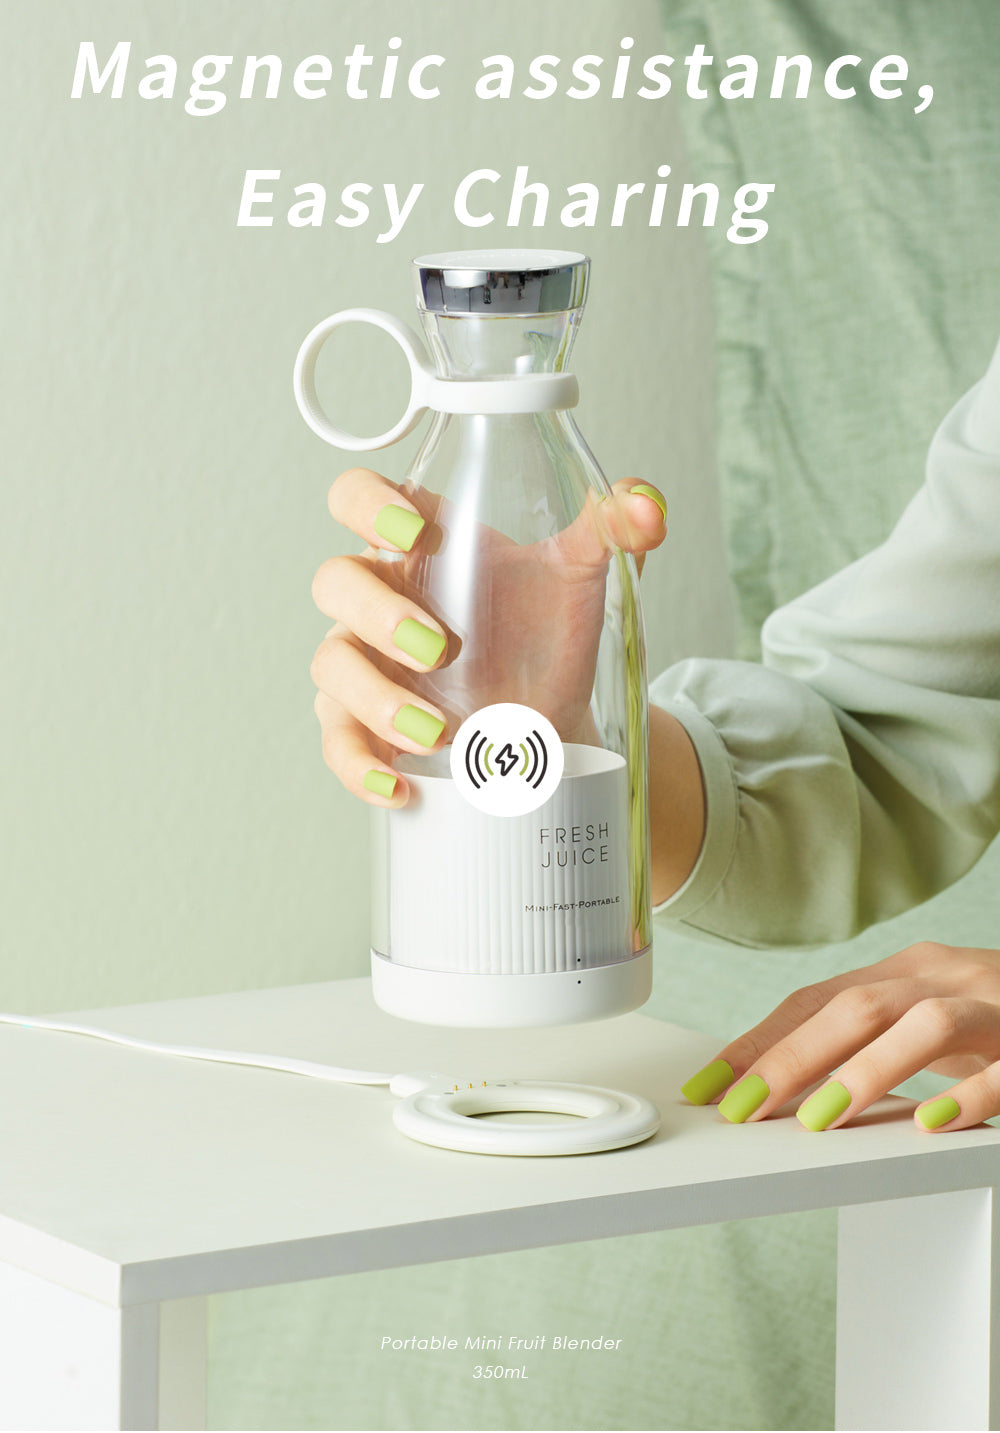 Portable Electric Juicer Blender Juice Maker Machine Milkshake Maker